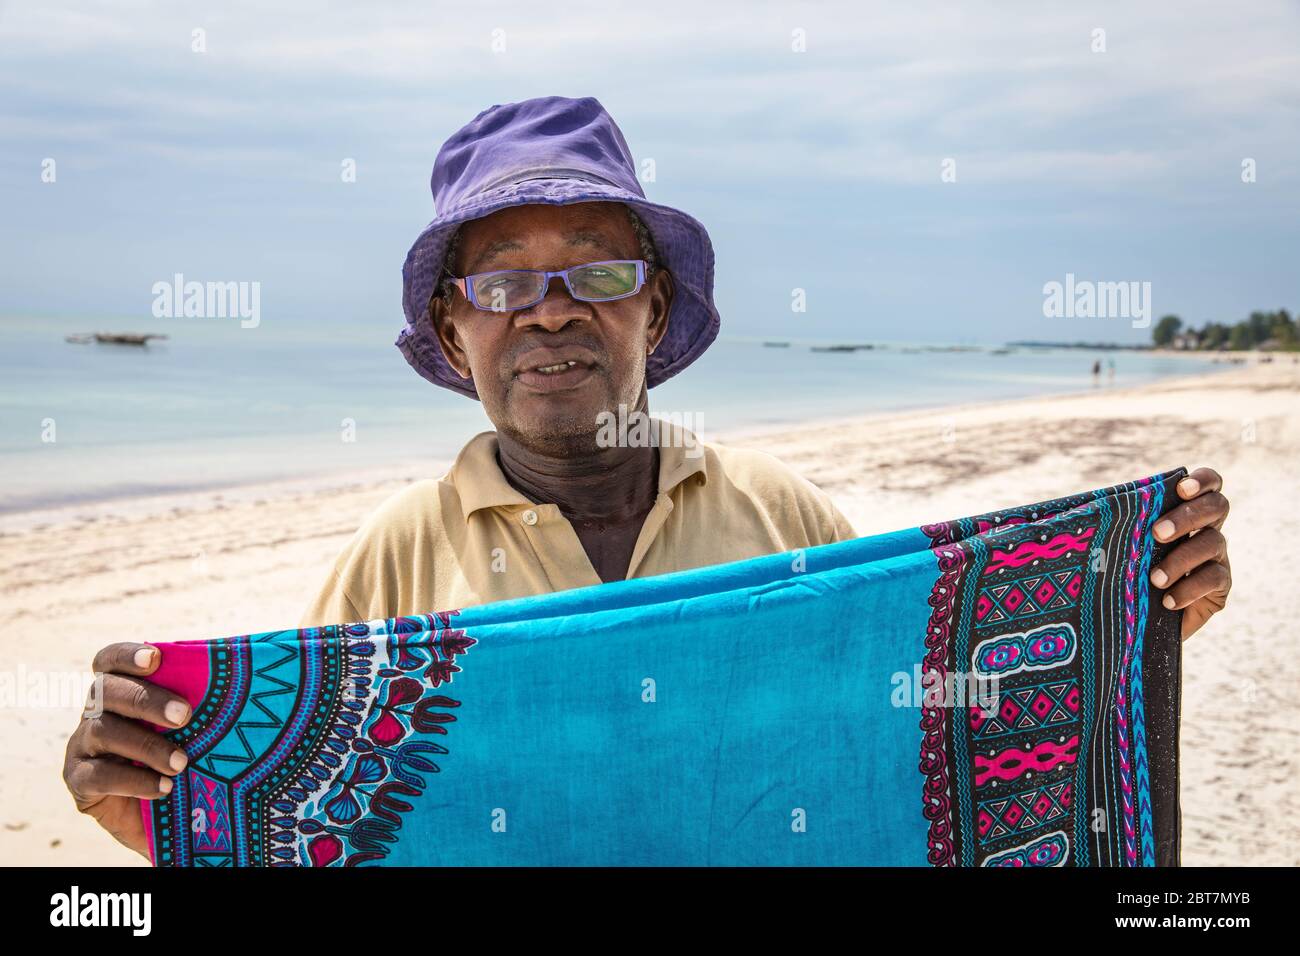 Sansibar vor der Küste Tansanias ist einer der größten kulturellen Schmelztiegel der Welt, mit arabischen, indischen, europäischen und einheimischen afrikanischen Einflüssen. Stockfoto